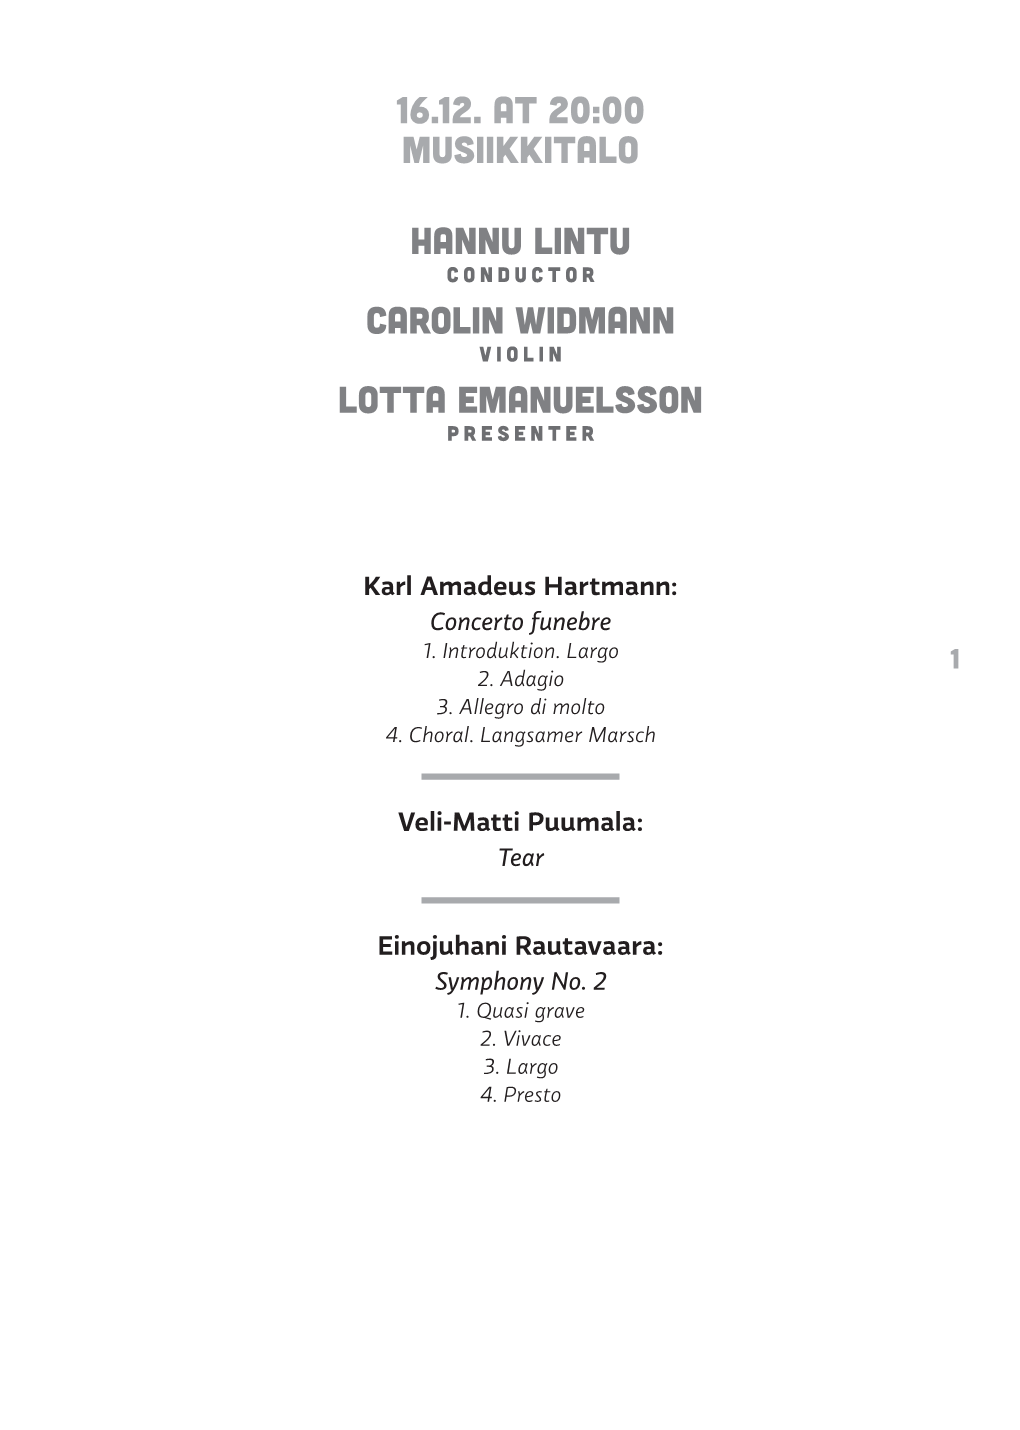 16.12. at 20:00 Musiikkitalo Hannu Lintu Carolin Widmann Lotta